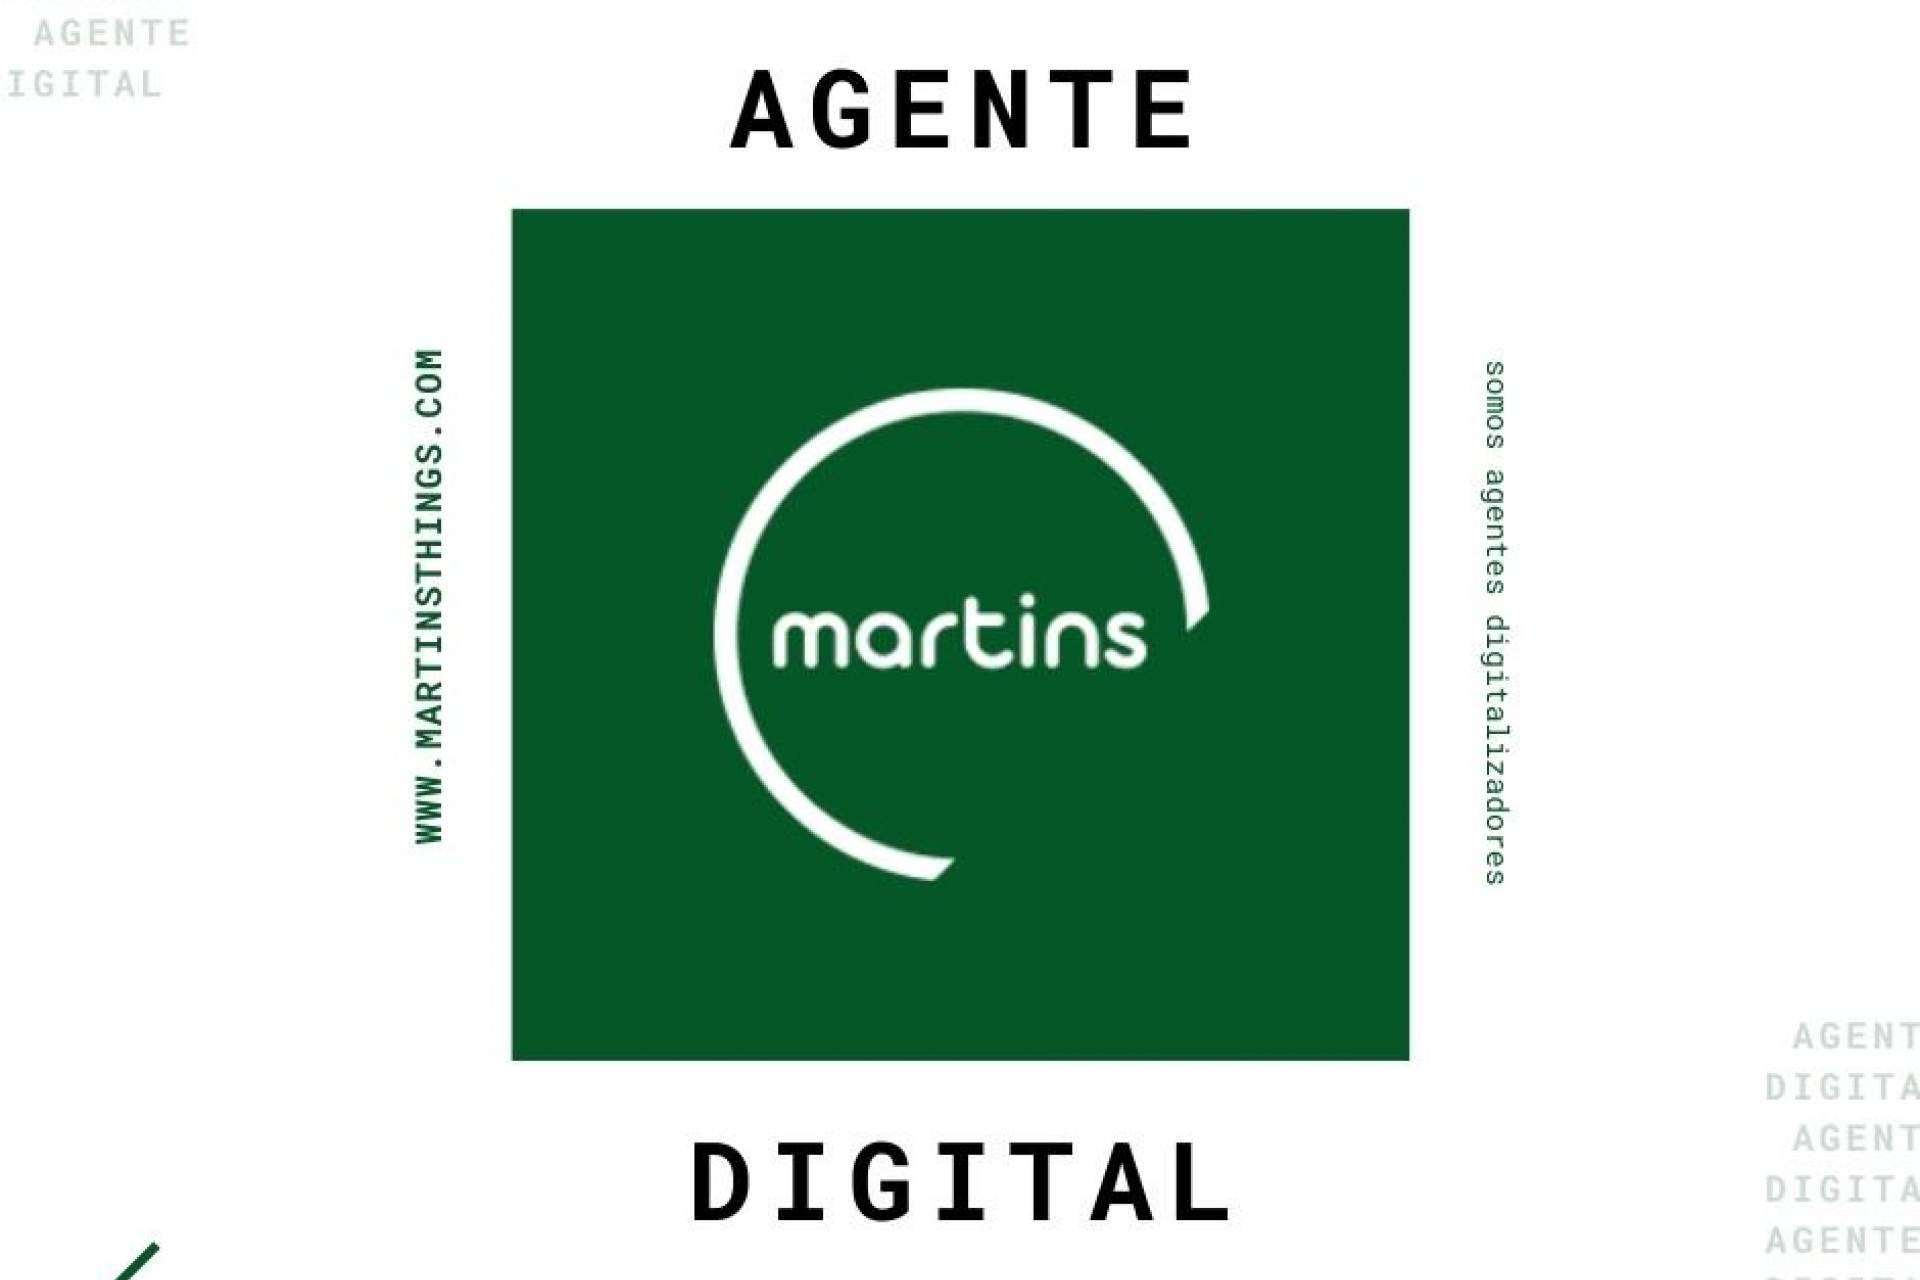 Martins Things es un agente digitalizador que ofrece excelentes beneficios a las entidades que eligen sus servicios de última tecnología